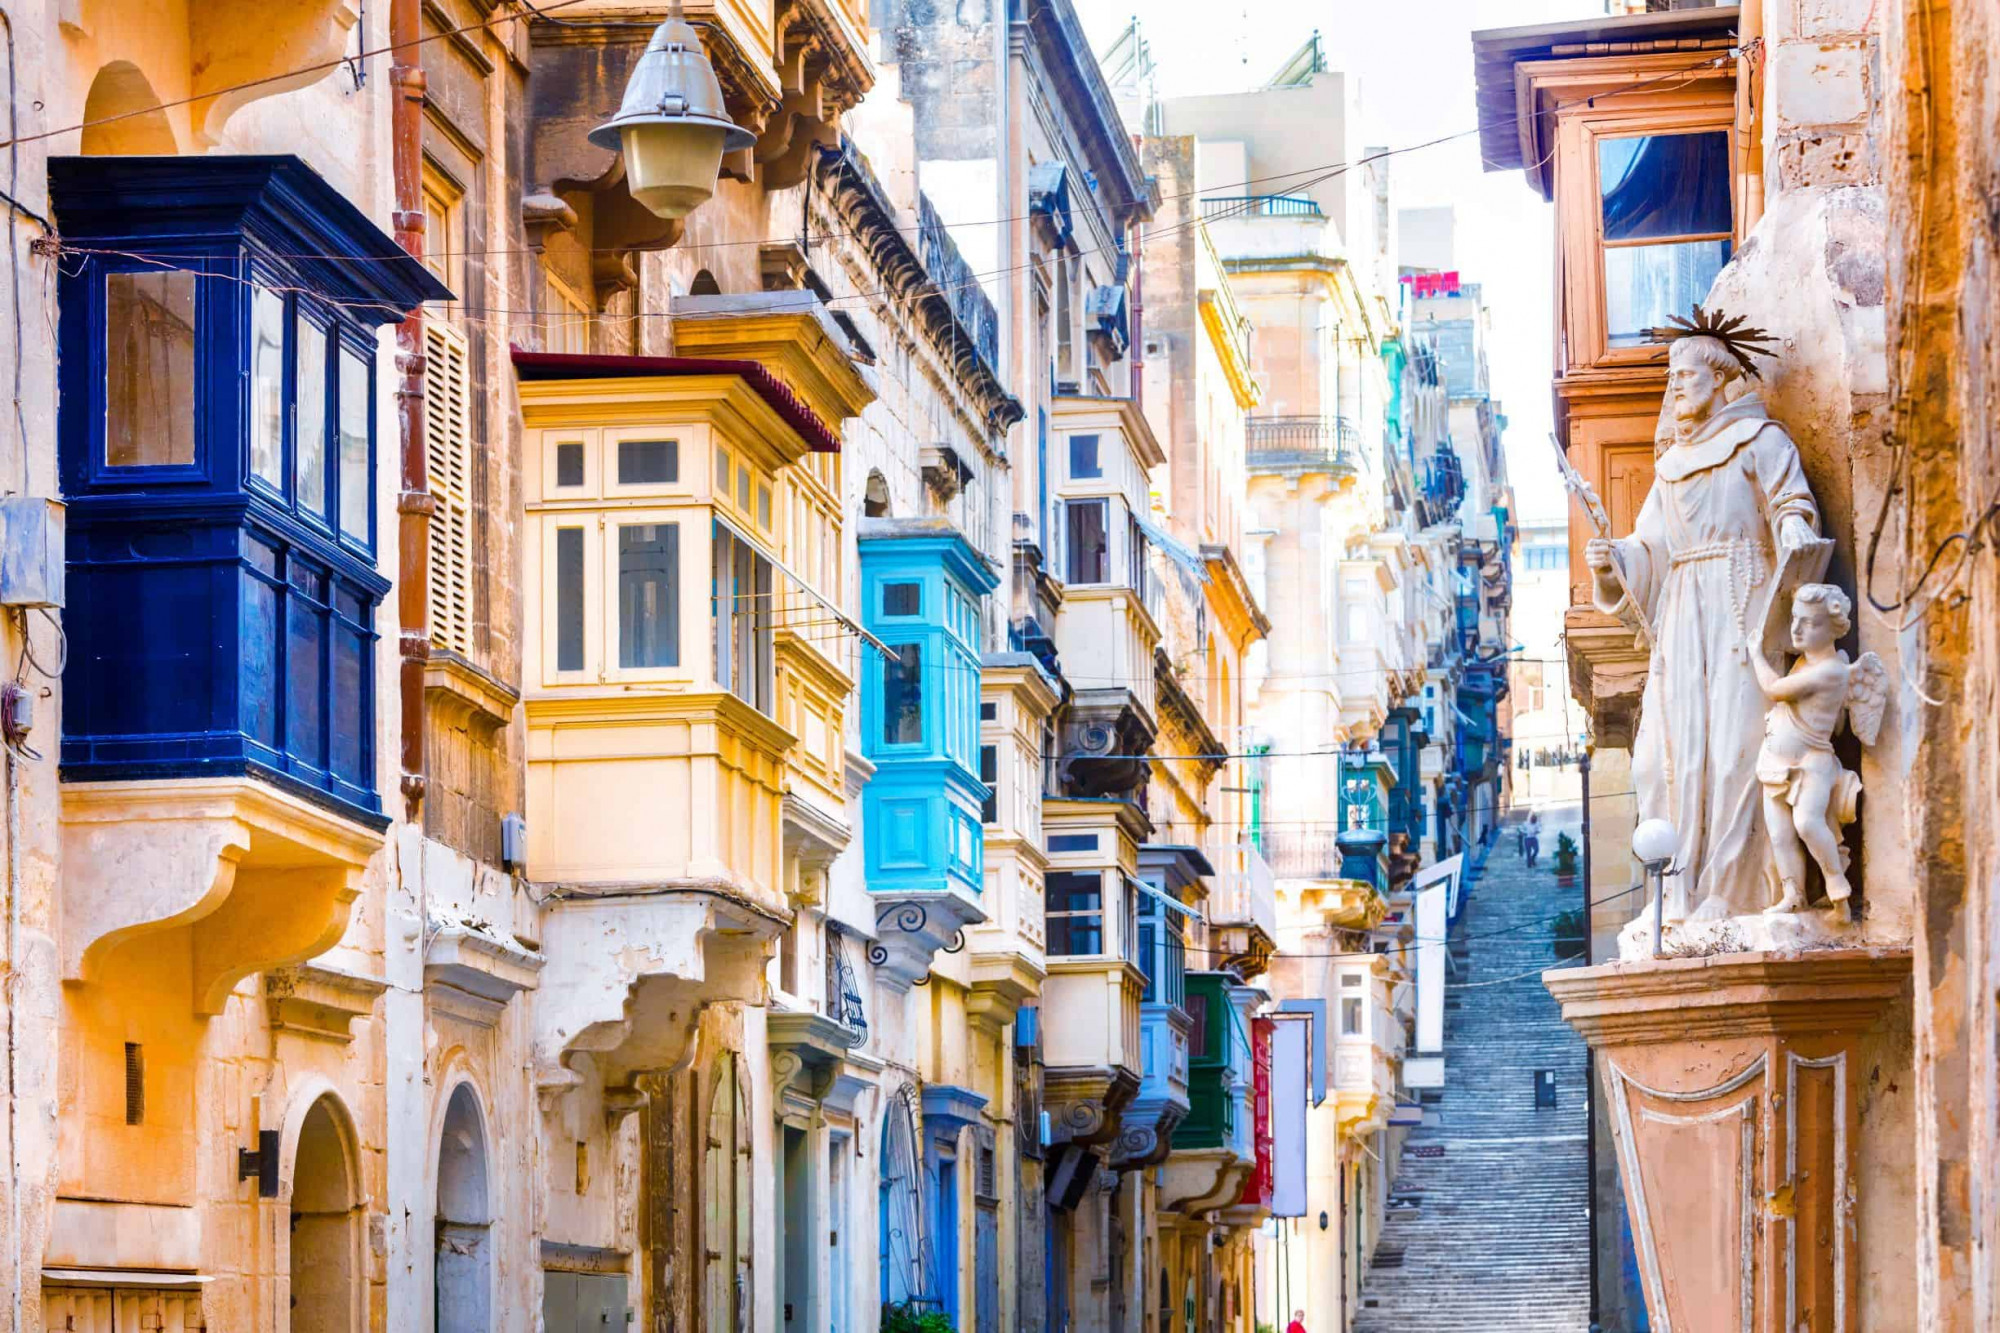 Valletta, Malta Mặc dù là một thành phố nhỏ, tòa thành kiên cố tráng lệ thời Phục hưng này thu hút sự chú ý. Vẻ đẹp thoạt tiên là khắc khổ: những pháo đài màu mật ong và những ngọn tháp bằng hạt tiêu, những ngôi nhà đồng nhất về mặt kiến ​​trúc lao xuống những con đường tối tăm, những dinh thự hình khối lớn của Hiệp sĩ St John rực sáng trên thành lũy. Điều làm dịu đi tất cả - và khiến nơi này trở thành một nơi dành cho những cuộc tản bộ chậm rãi và thả mình trên những sân thượng của quán cà phê - là ánh sáng vàng của Địa Trung Hải và vị trí của Valletta phía trên Grand Harbour, một mảng màu xanh lộng lẫy. Những cây cọ thêm bọt xanh, và các vị thánh vẫy tay từ mái nhà